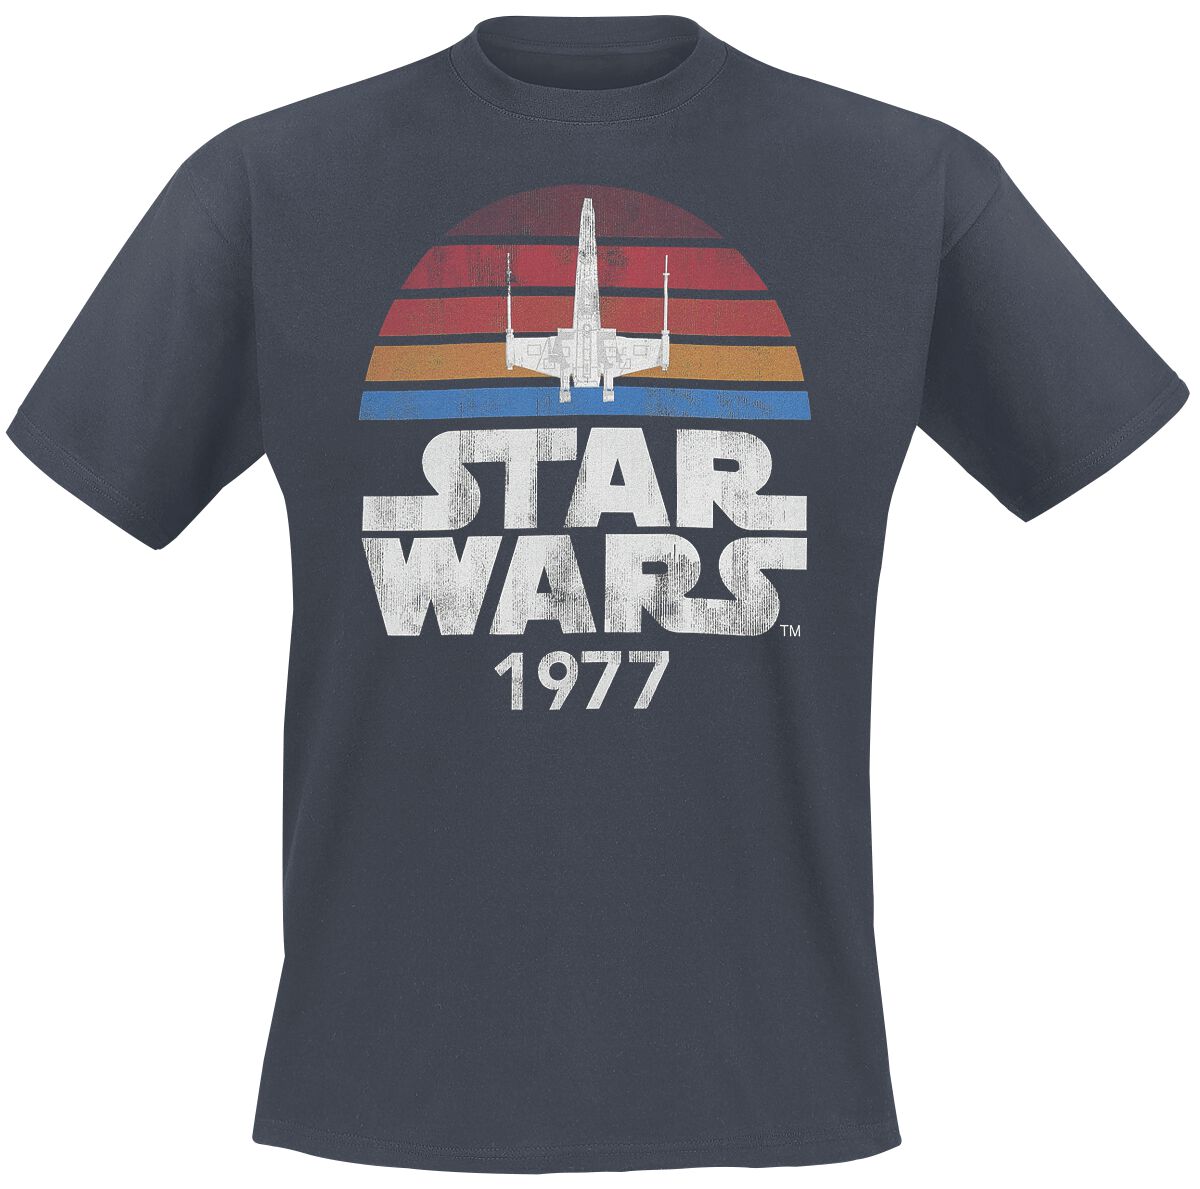 Star Wars T-Shirt - Since 1977 - S bis XXL - für Männer - Größe M - anthrazit  - Lizenzierter Fanartikel